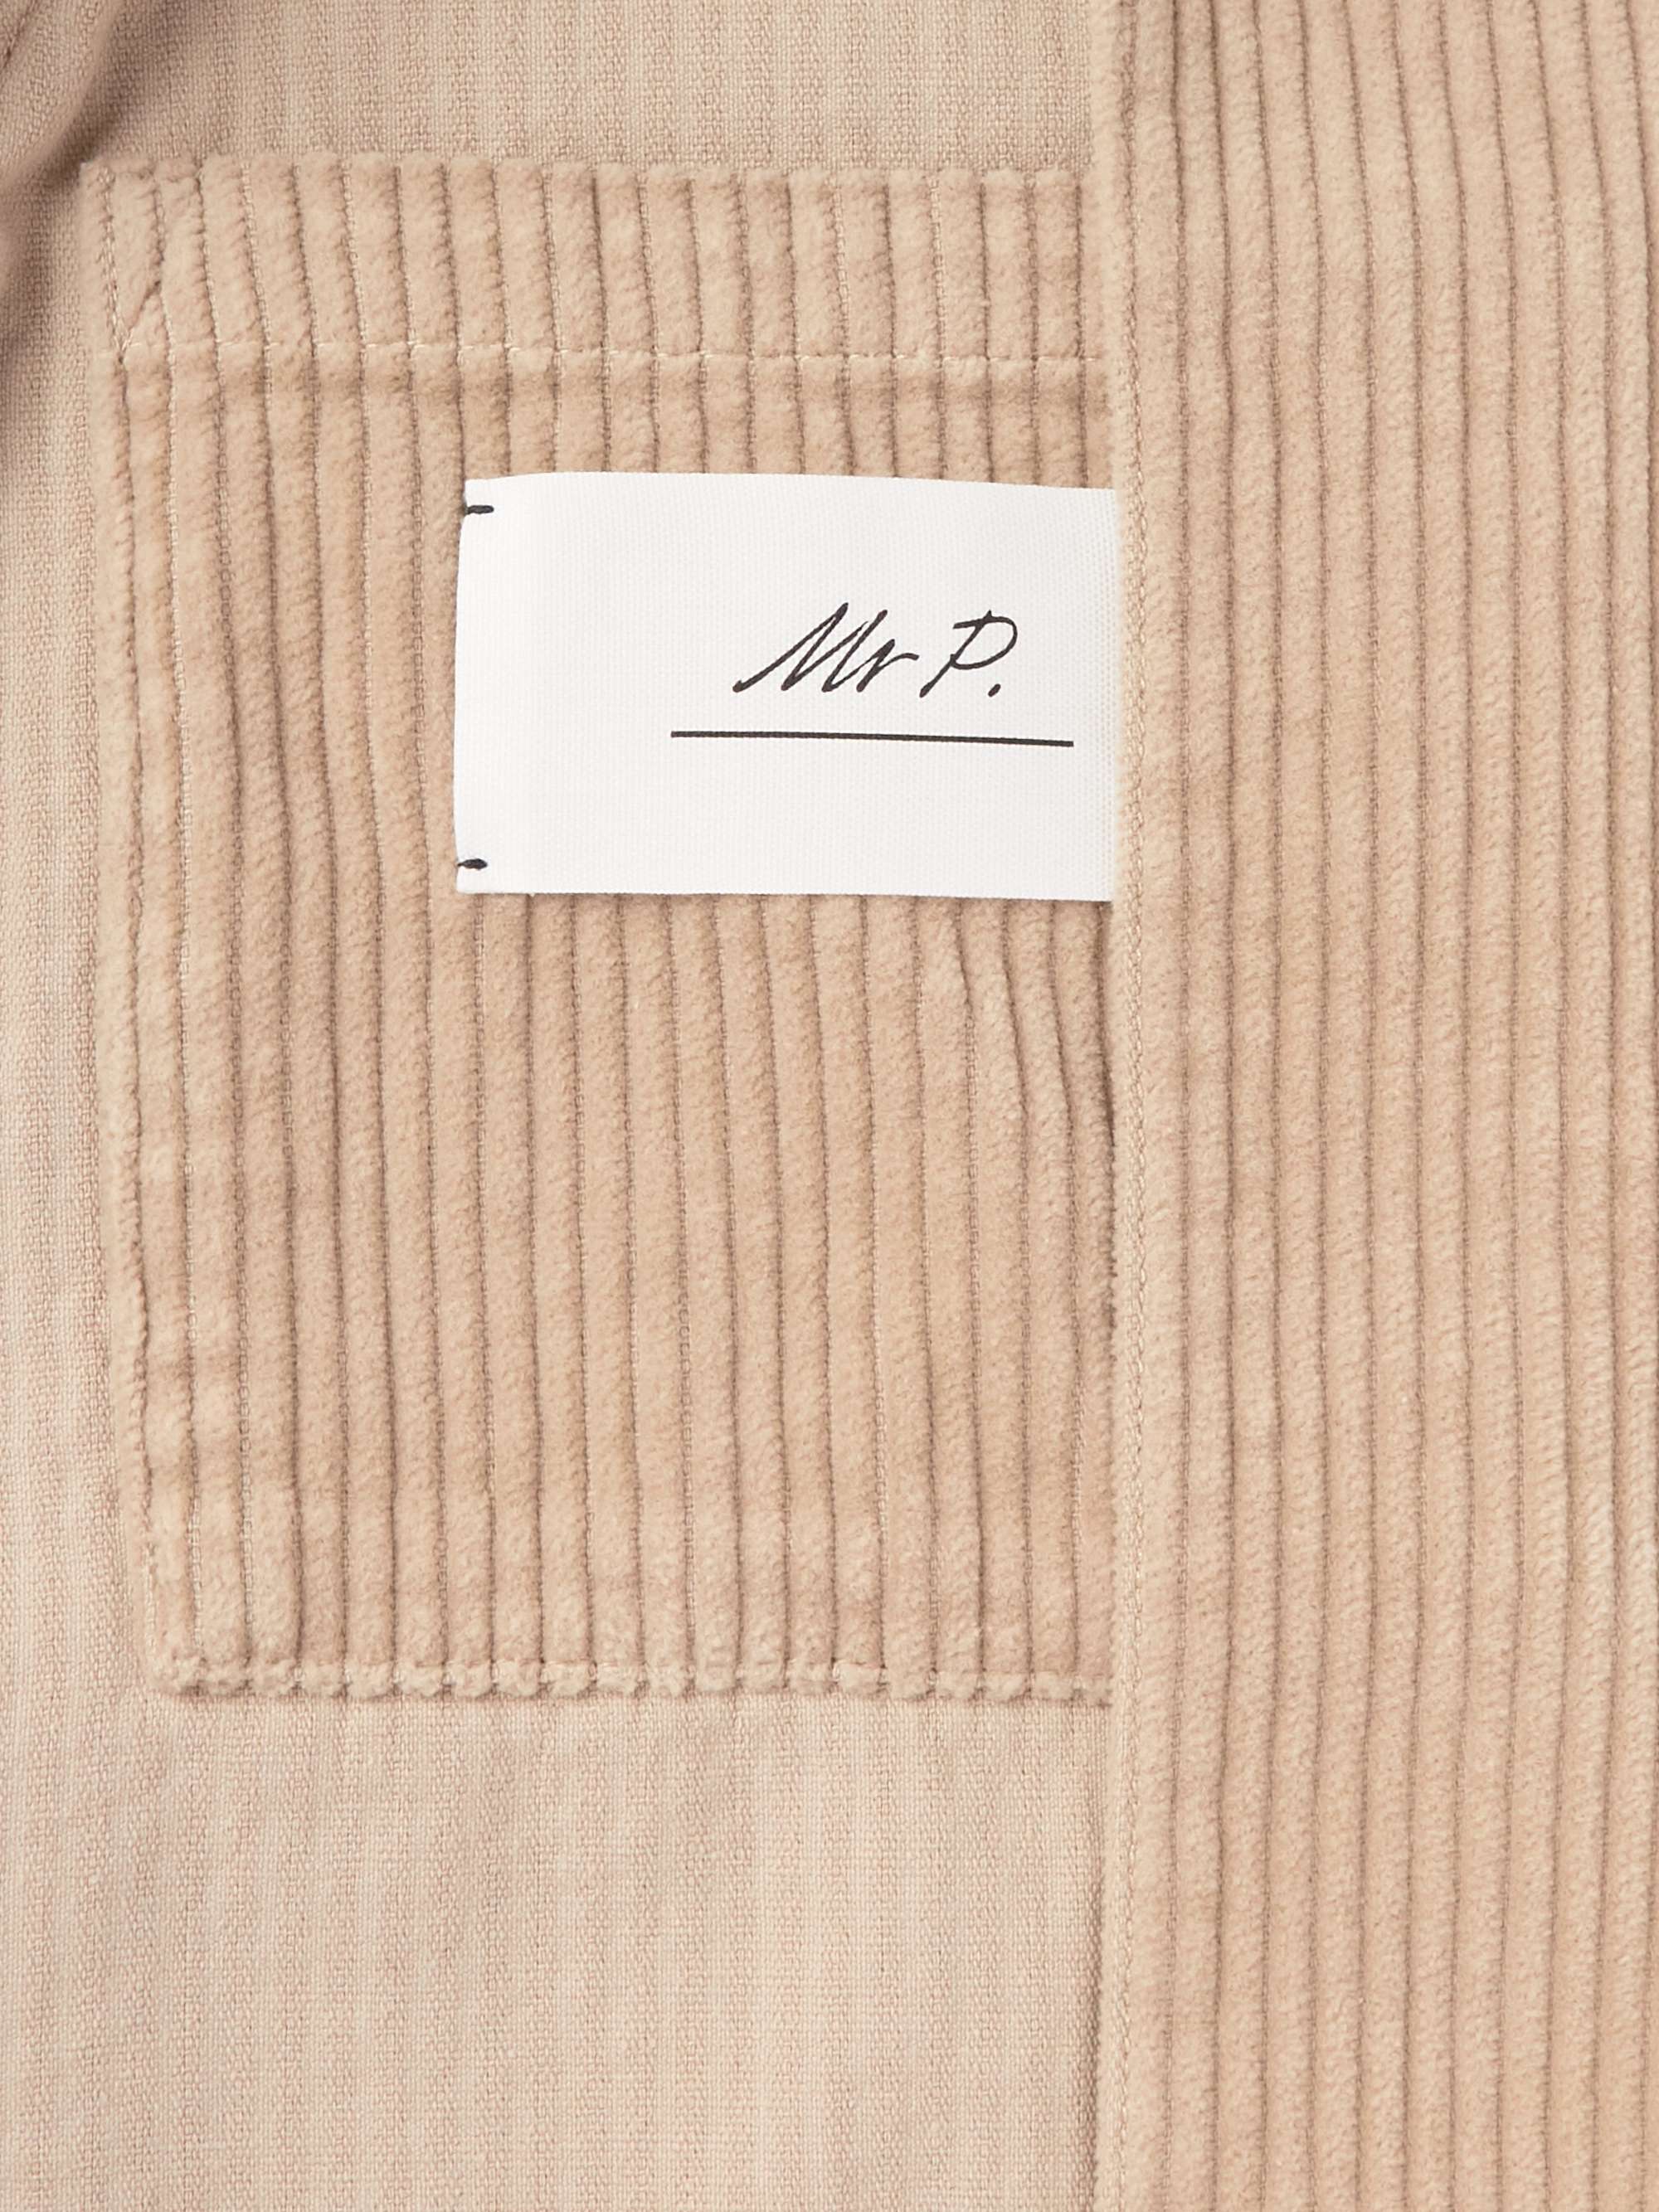 MR P. Garment-Dyed Unstructured Cotton-Corduroy Blazer